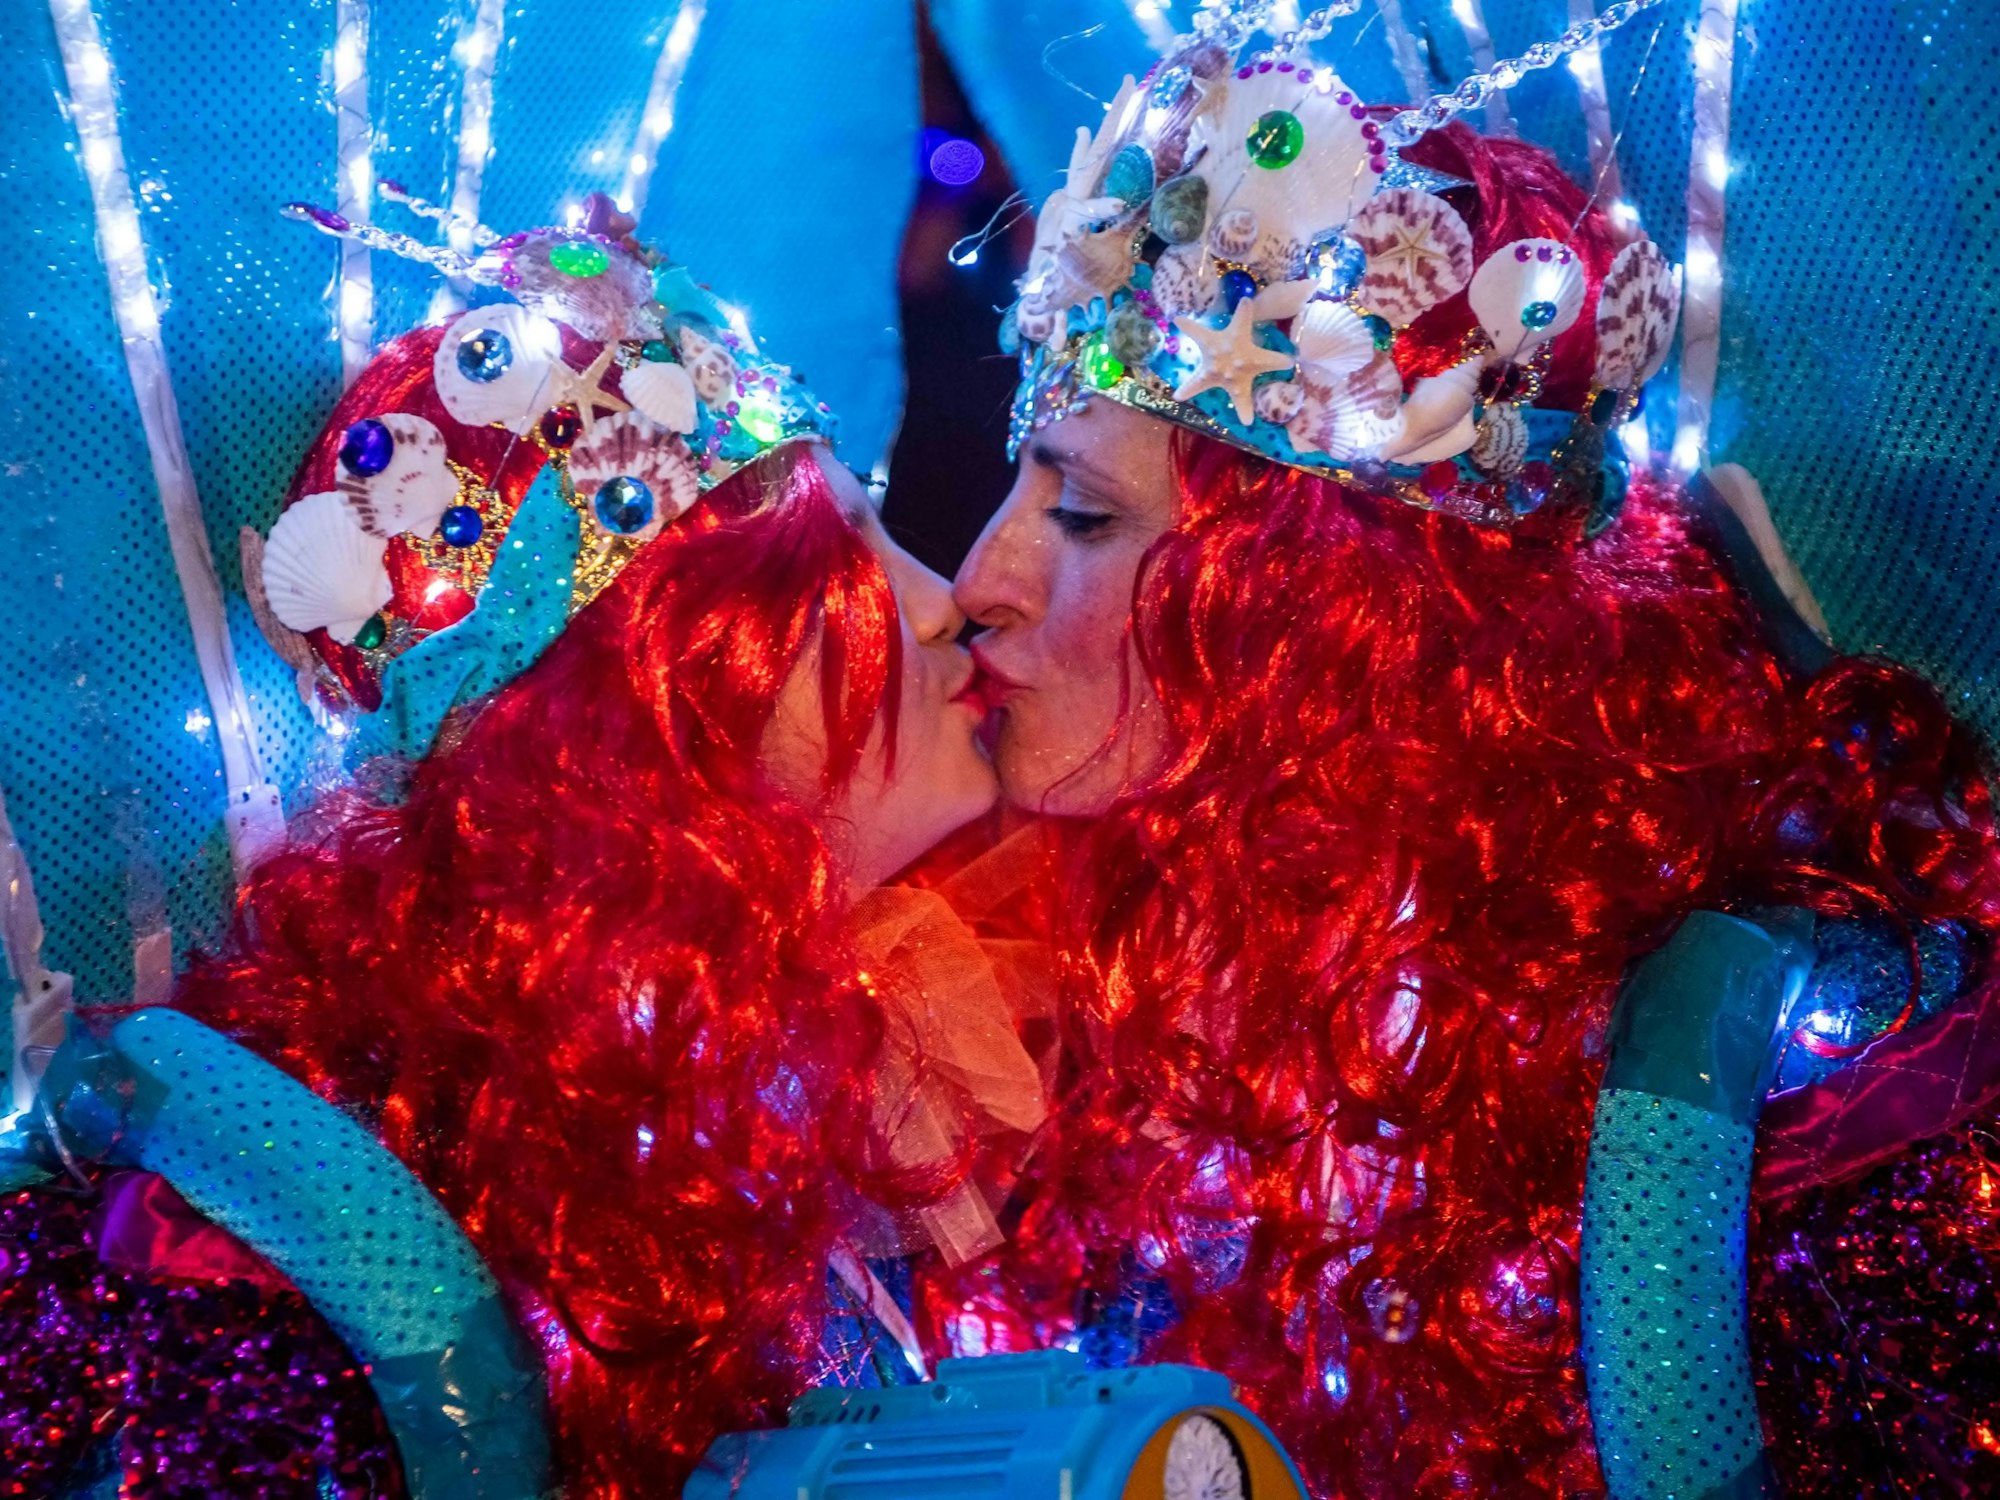 Das Bild zeigt zwei Frauen, die als Meerjungfrauen kostümiert sind und sich küssen.